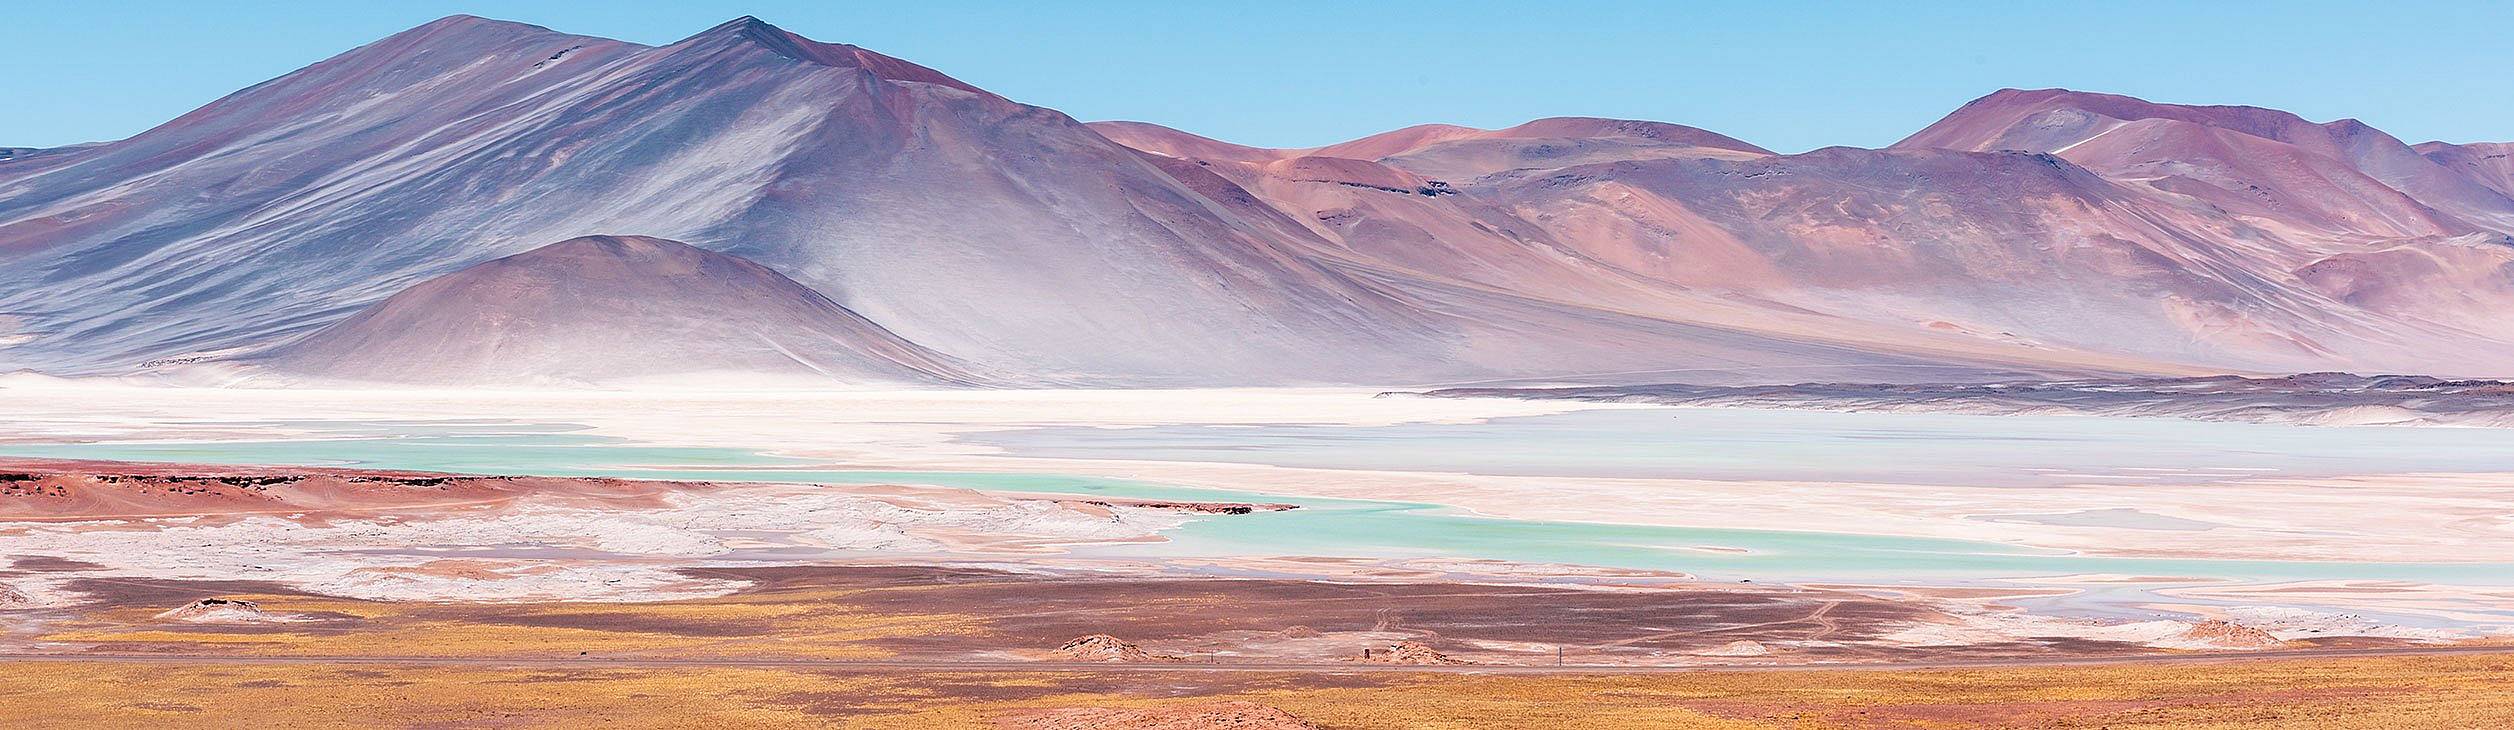 Piedras Rojas-San Pedro de Atacama, Antofagasta region, Ch